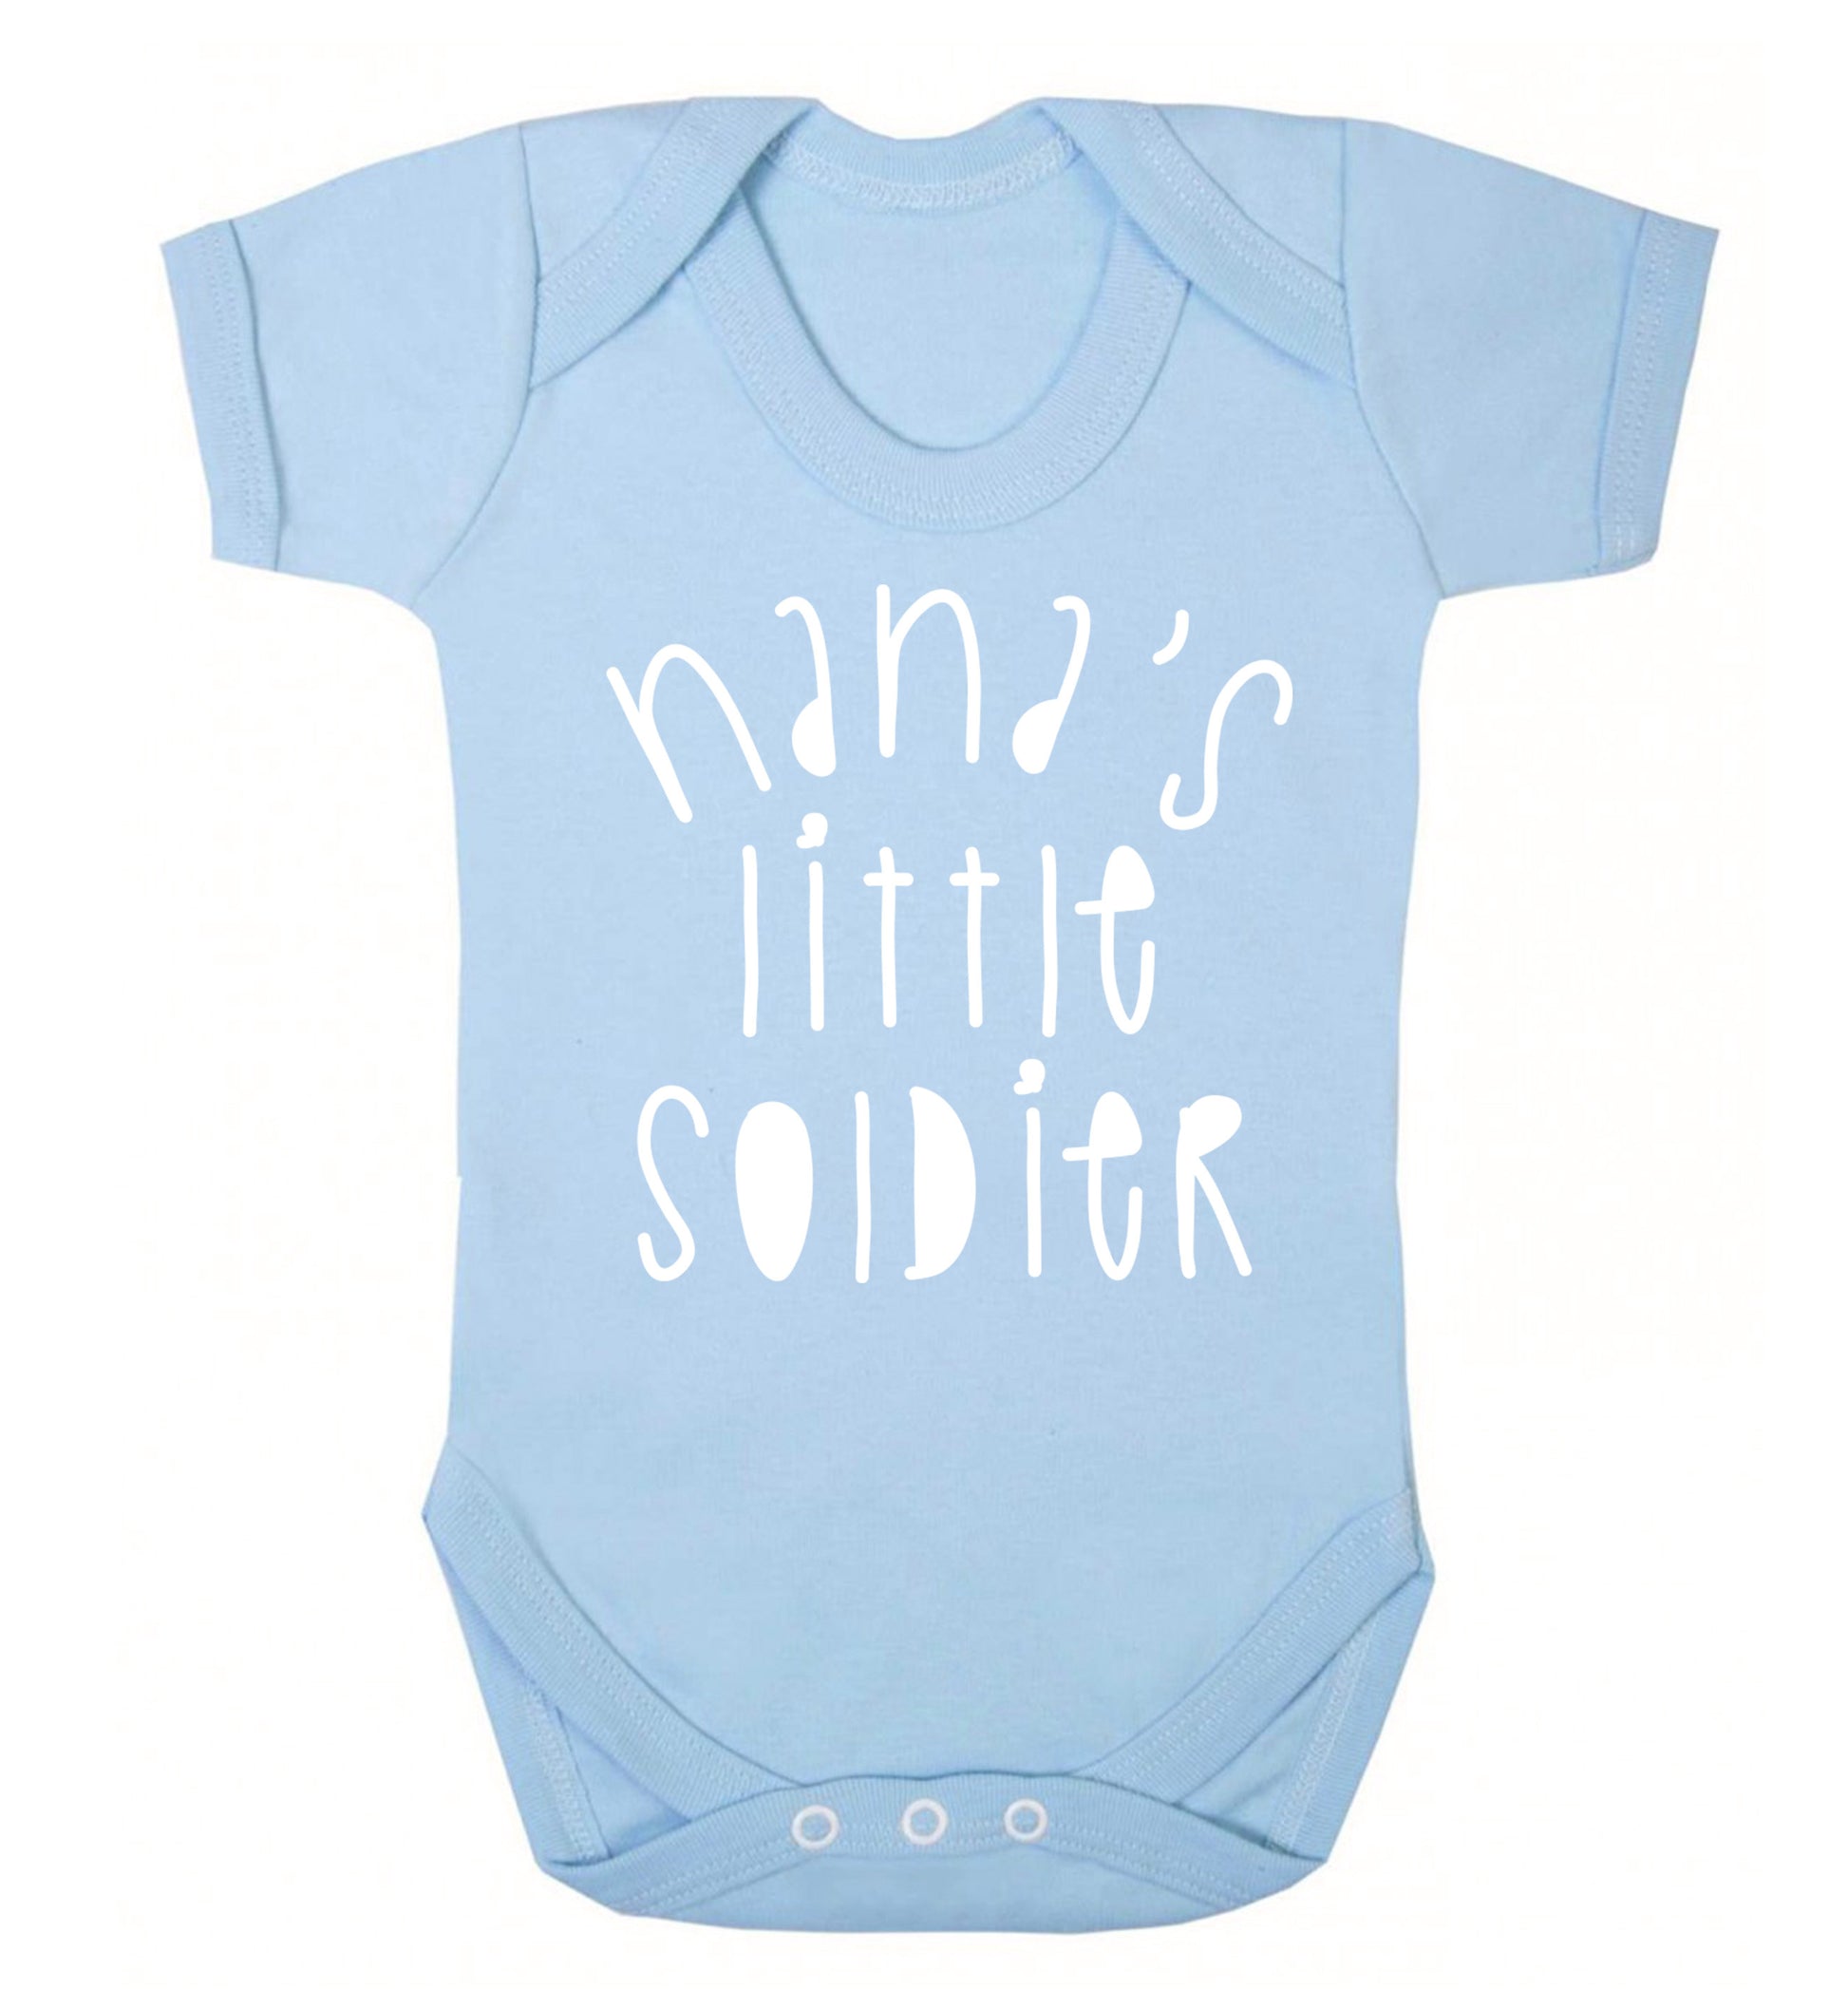 Nana's little soldier Baby Vest pale blue 18-24 months